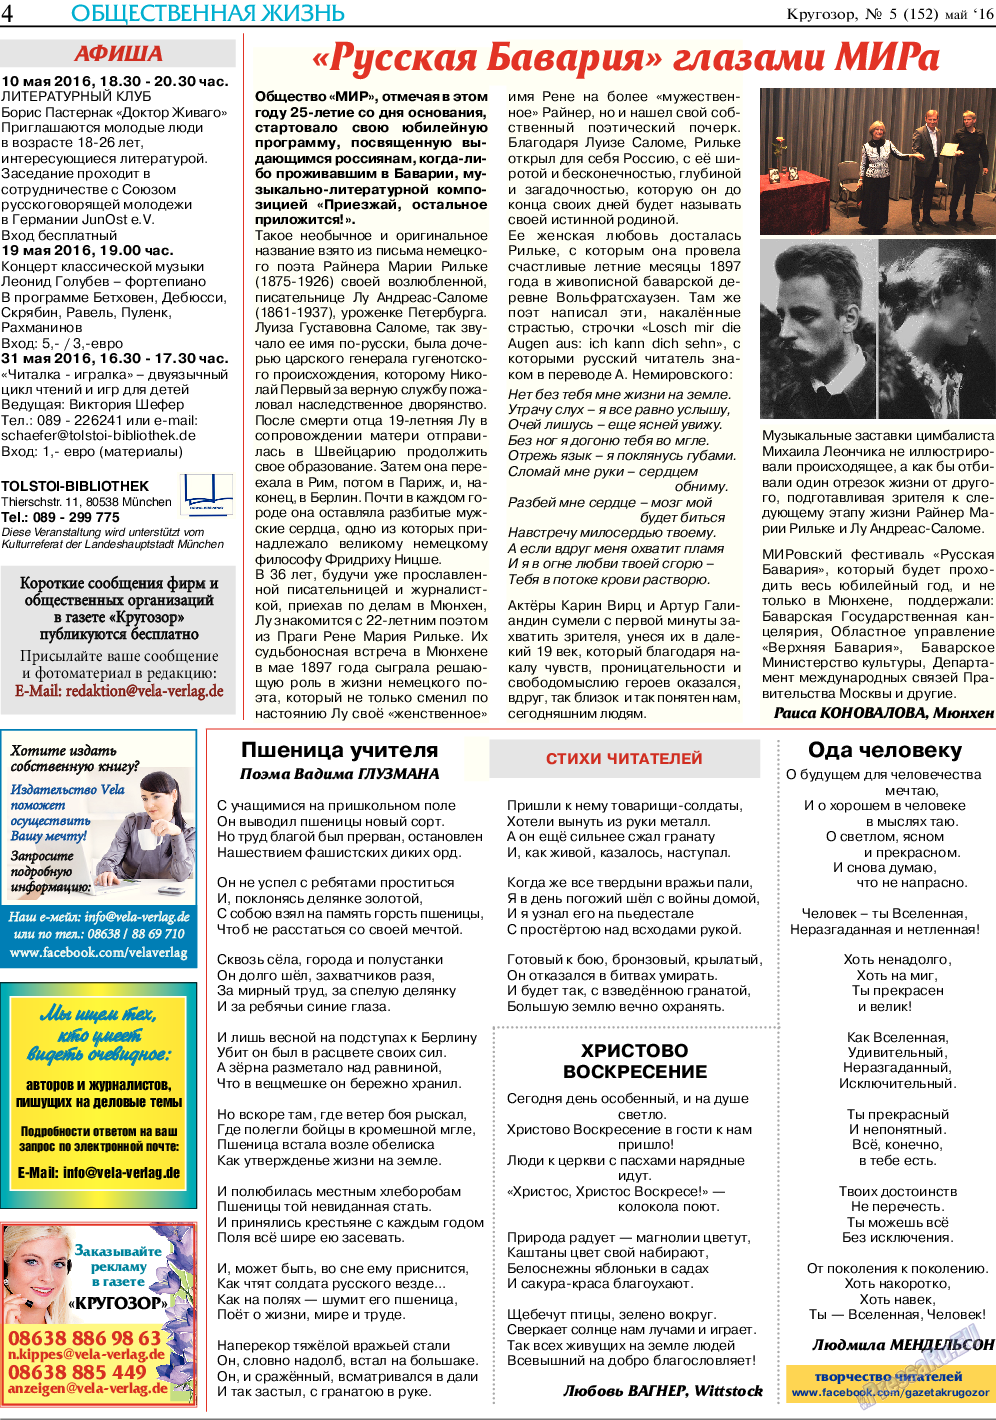 Кругозор, газета. 2016 №5 стр.4